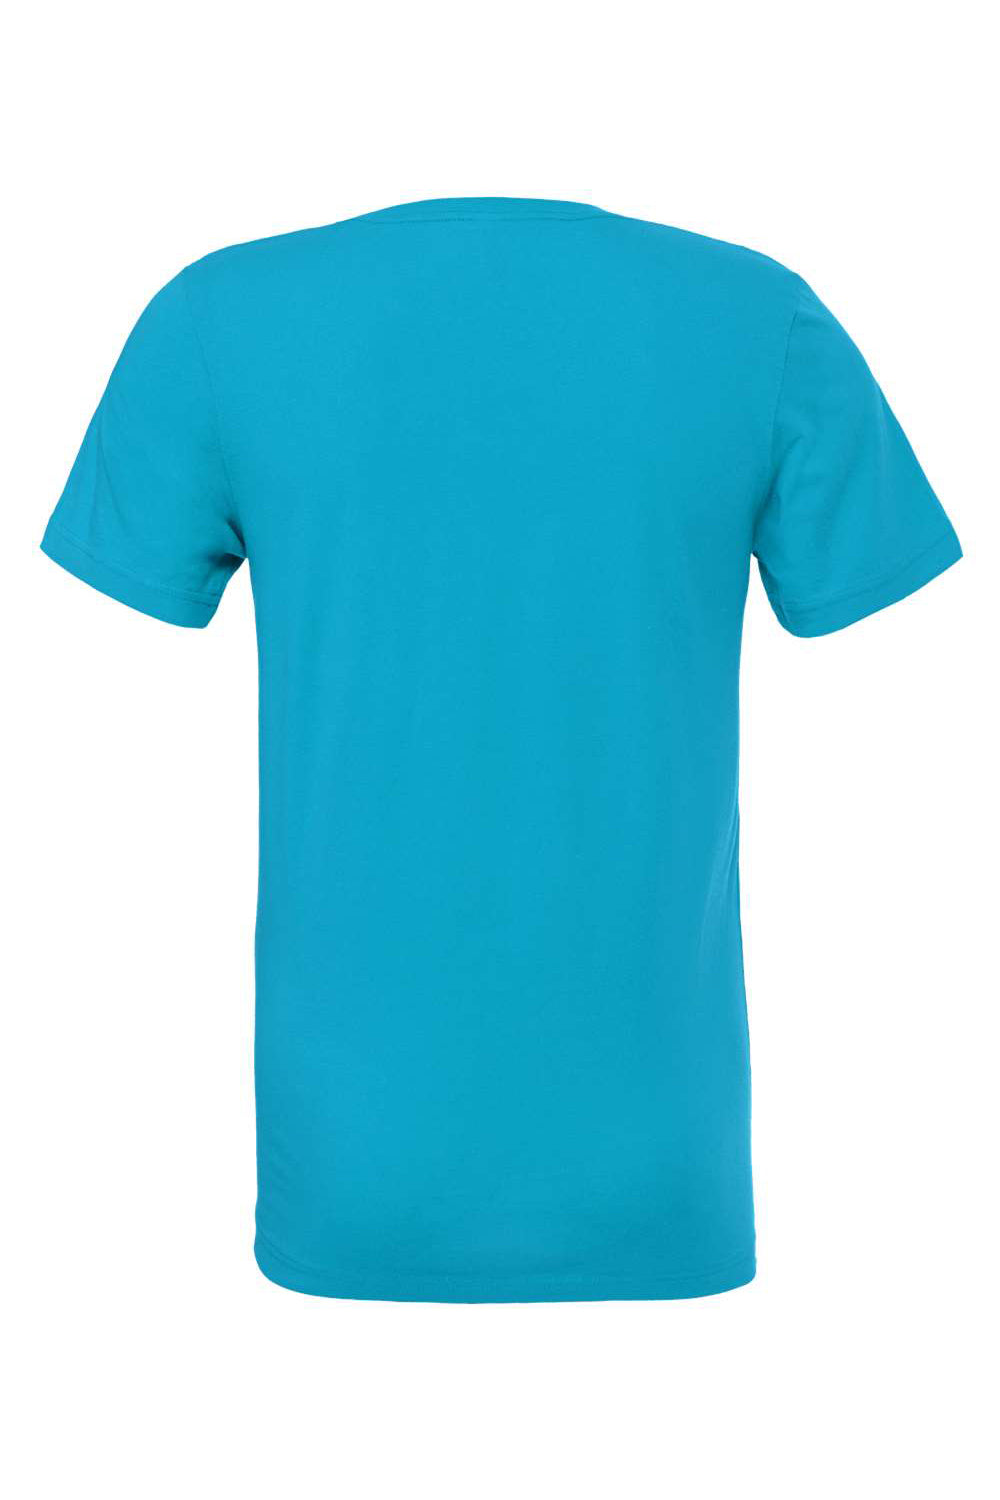 Bella + Canvas BC3001/3001C Mens Jersey Short Sleeve Crewneck T-Shirt Aqua Blue Flat Back